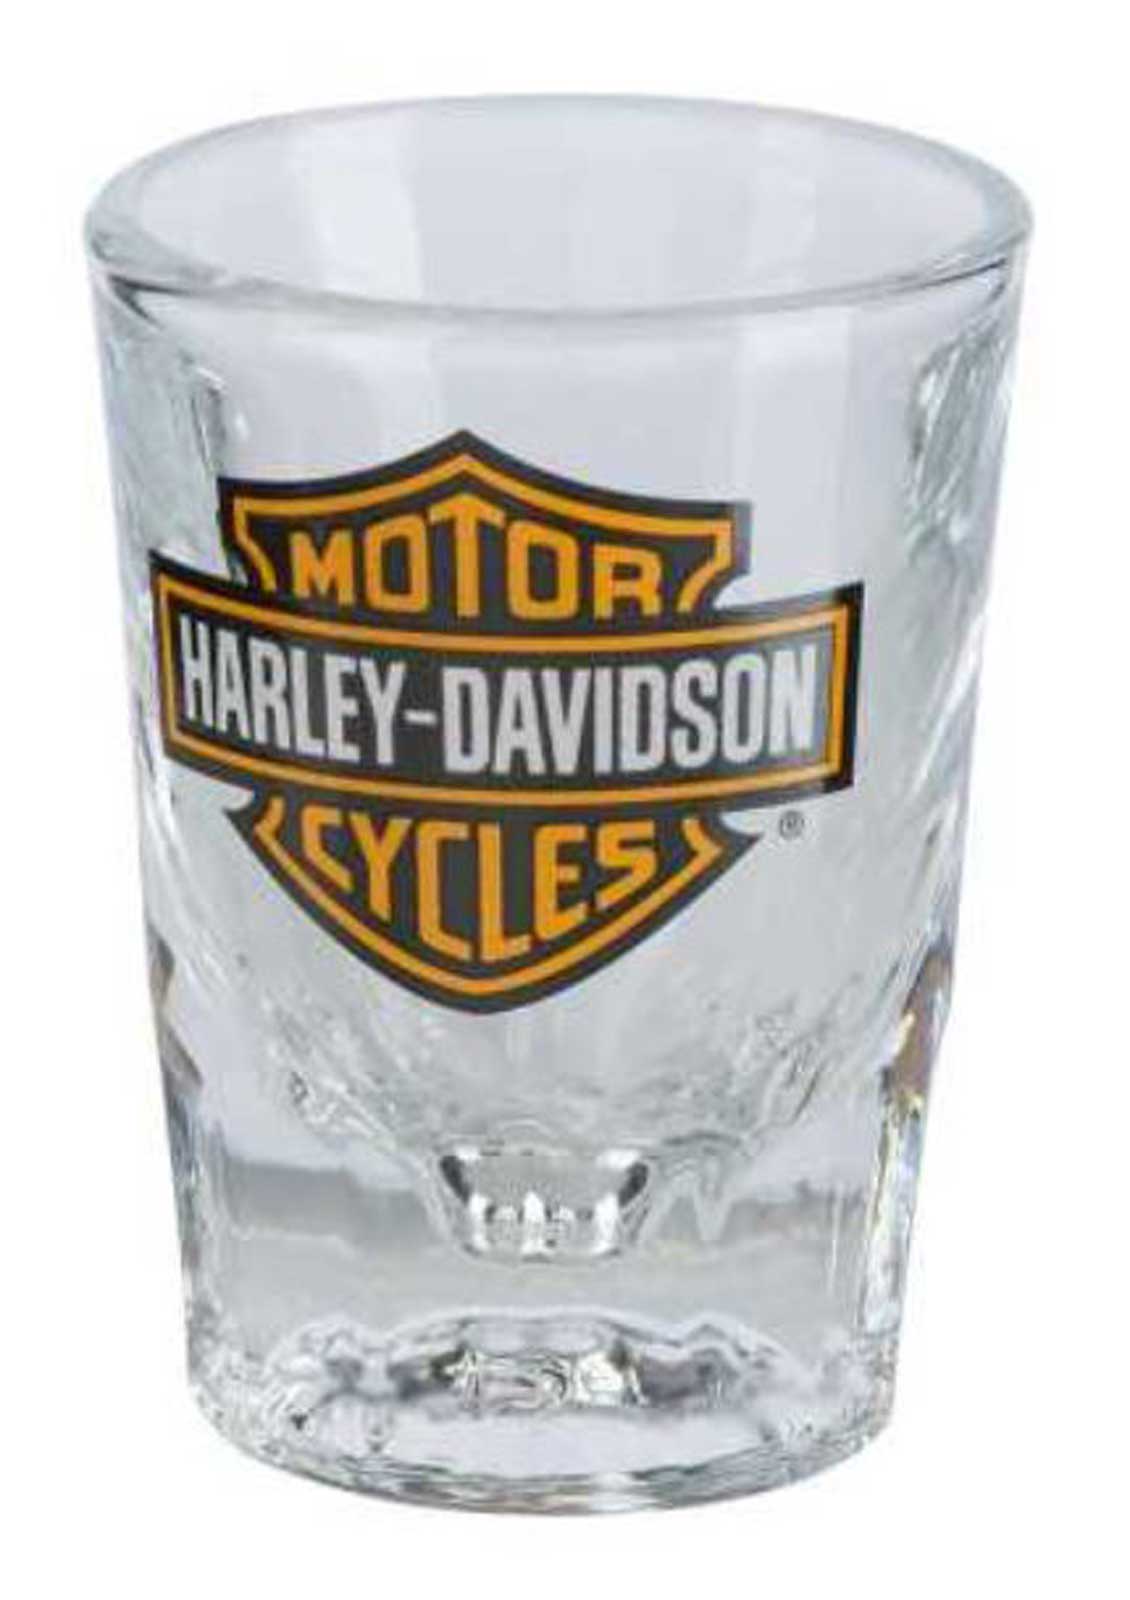 Harley Davidson® Core Bar And Shield Logo Shot Glass 2 Oz Clear Hdx 98713 Wisconsin Harley